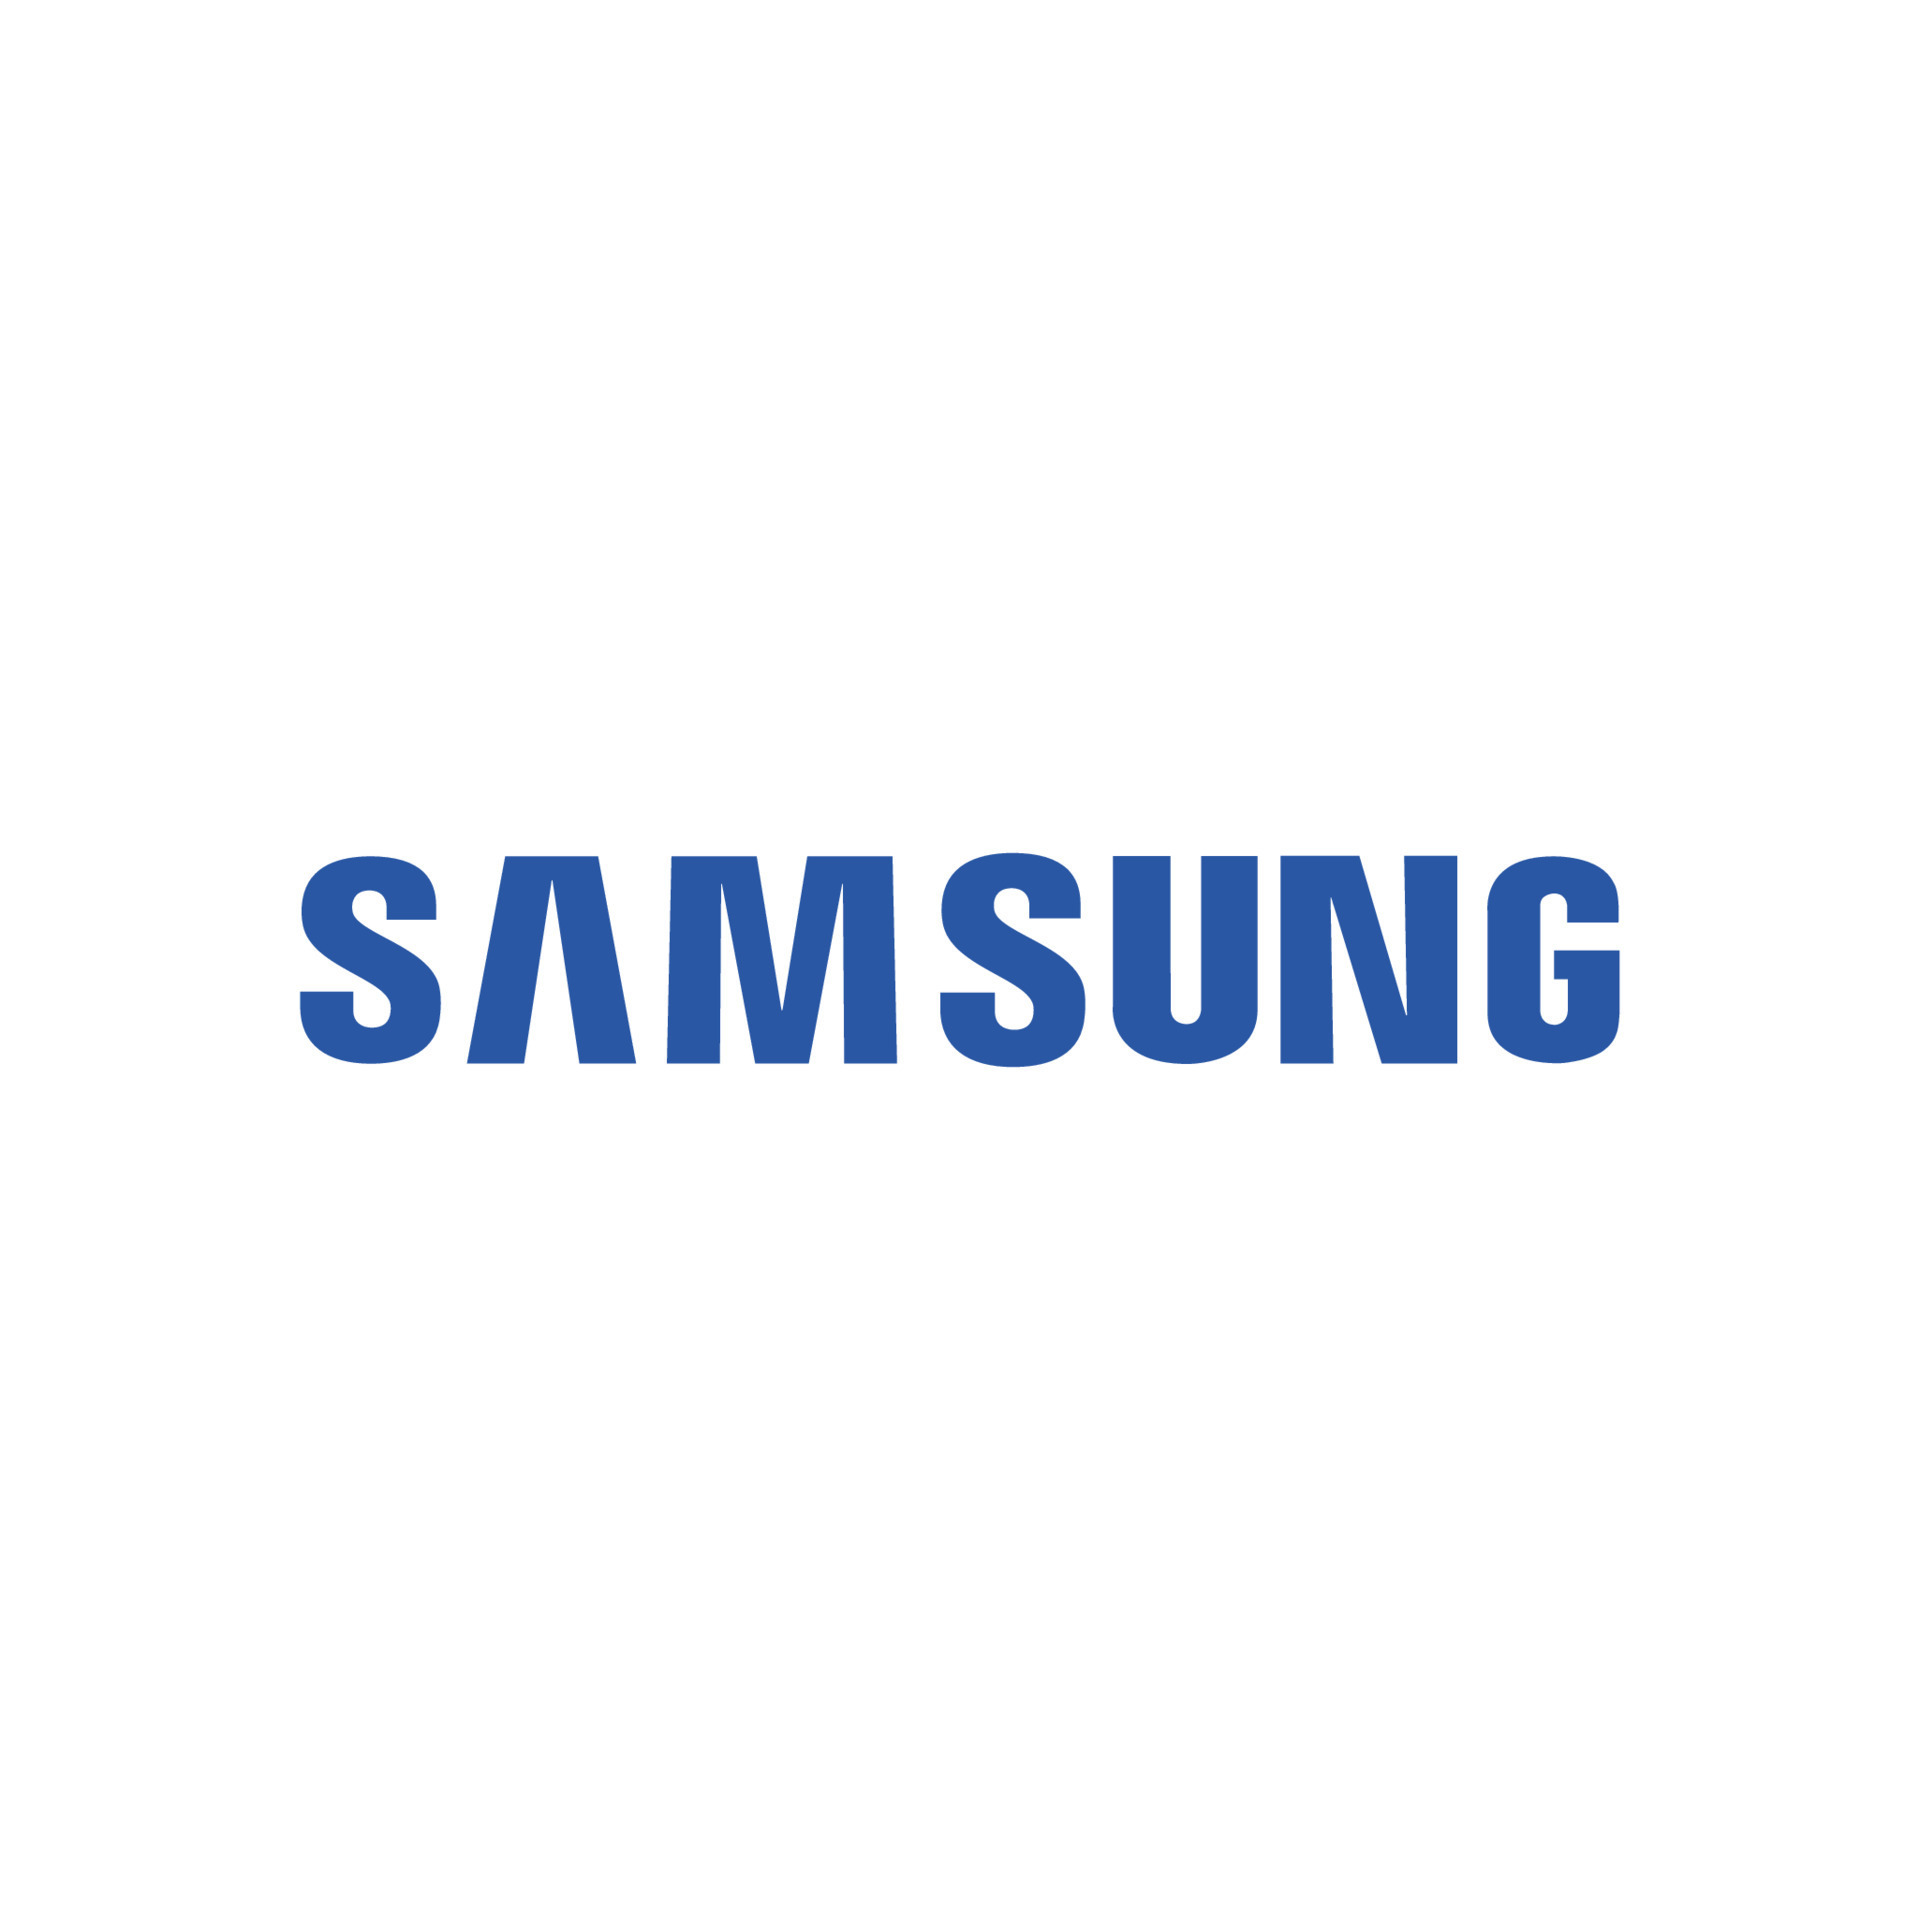 Samsung logo vector, Samsung icon free vector 20336197 Vector Art at ...